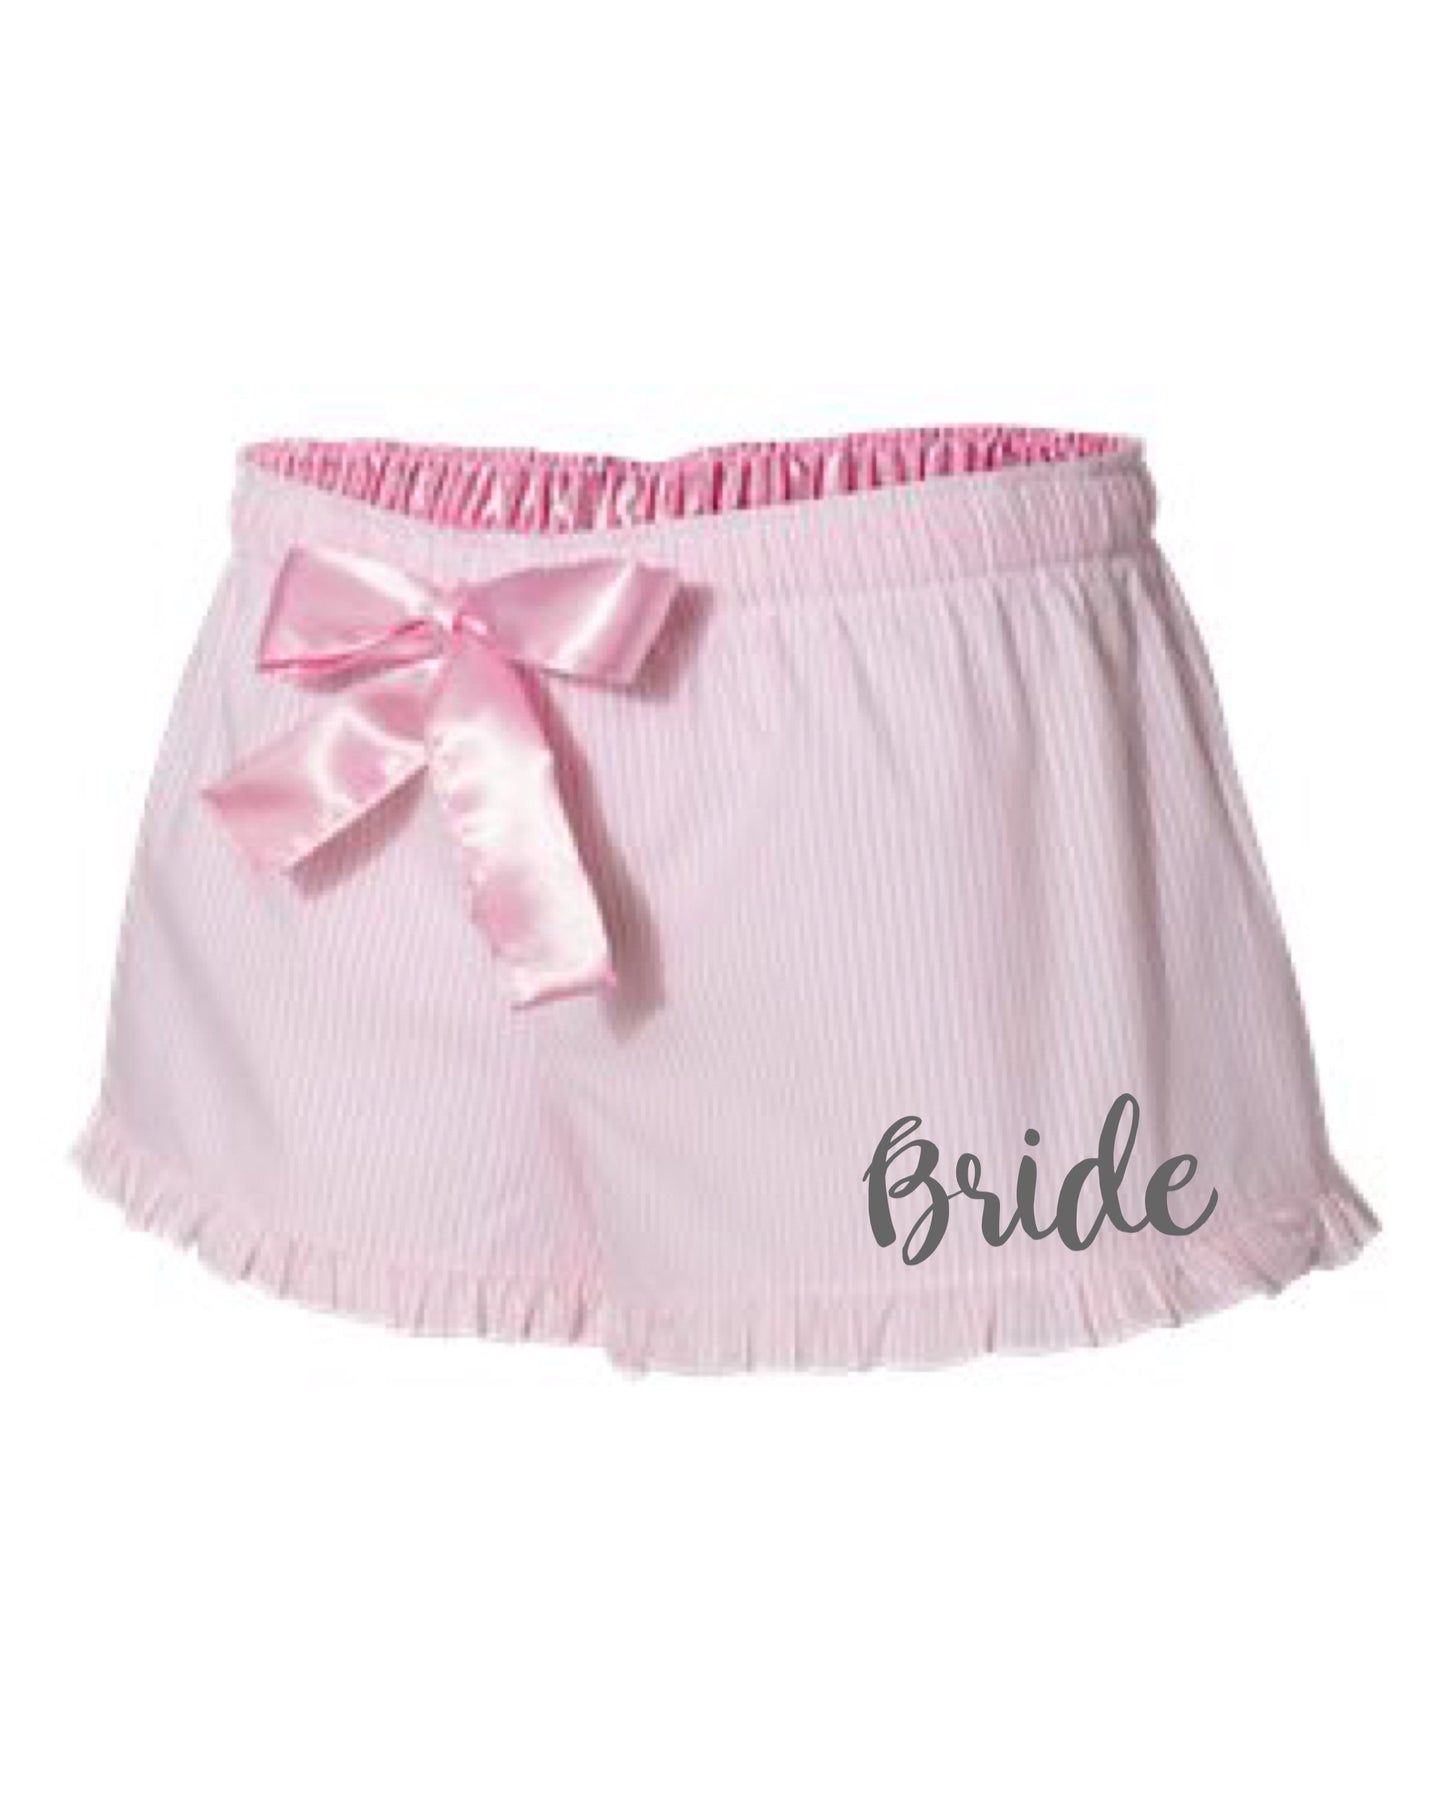 Bride pajama shorts| Bride shorts| Bride pajamas| Bride gift| Gift for bride| wedding shower gift| bachelorette gift| gift for her| shorts